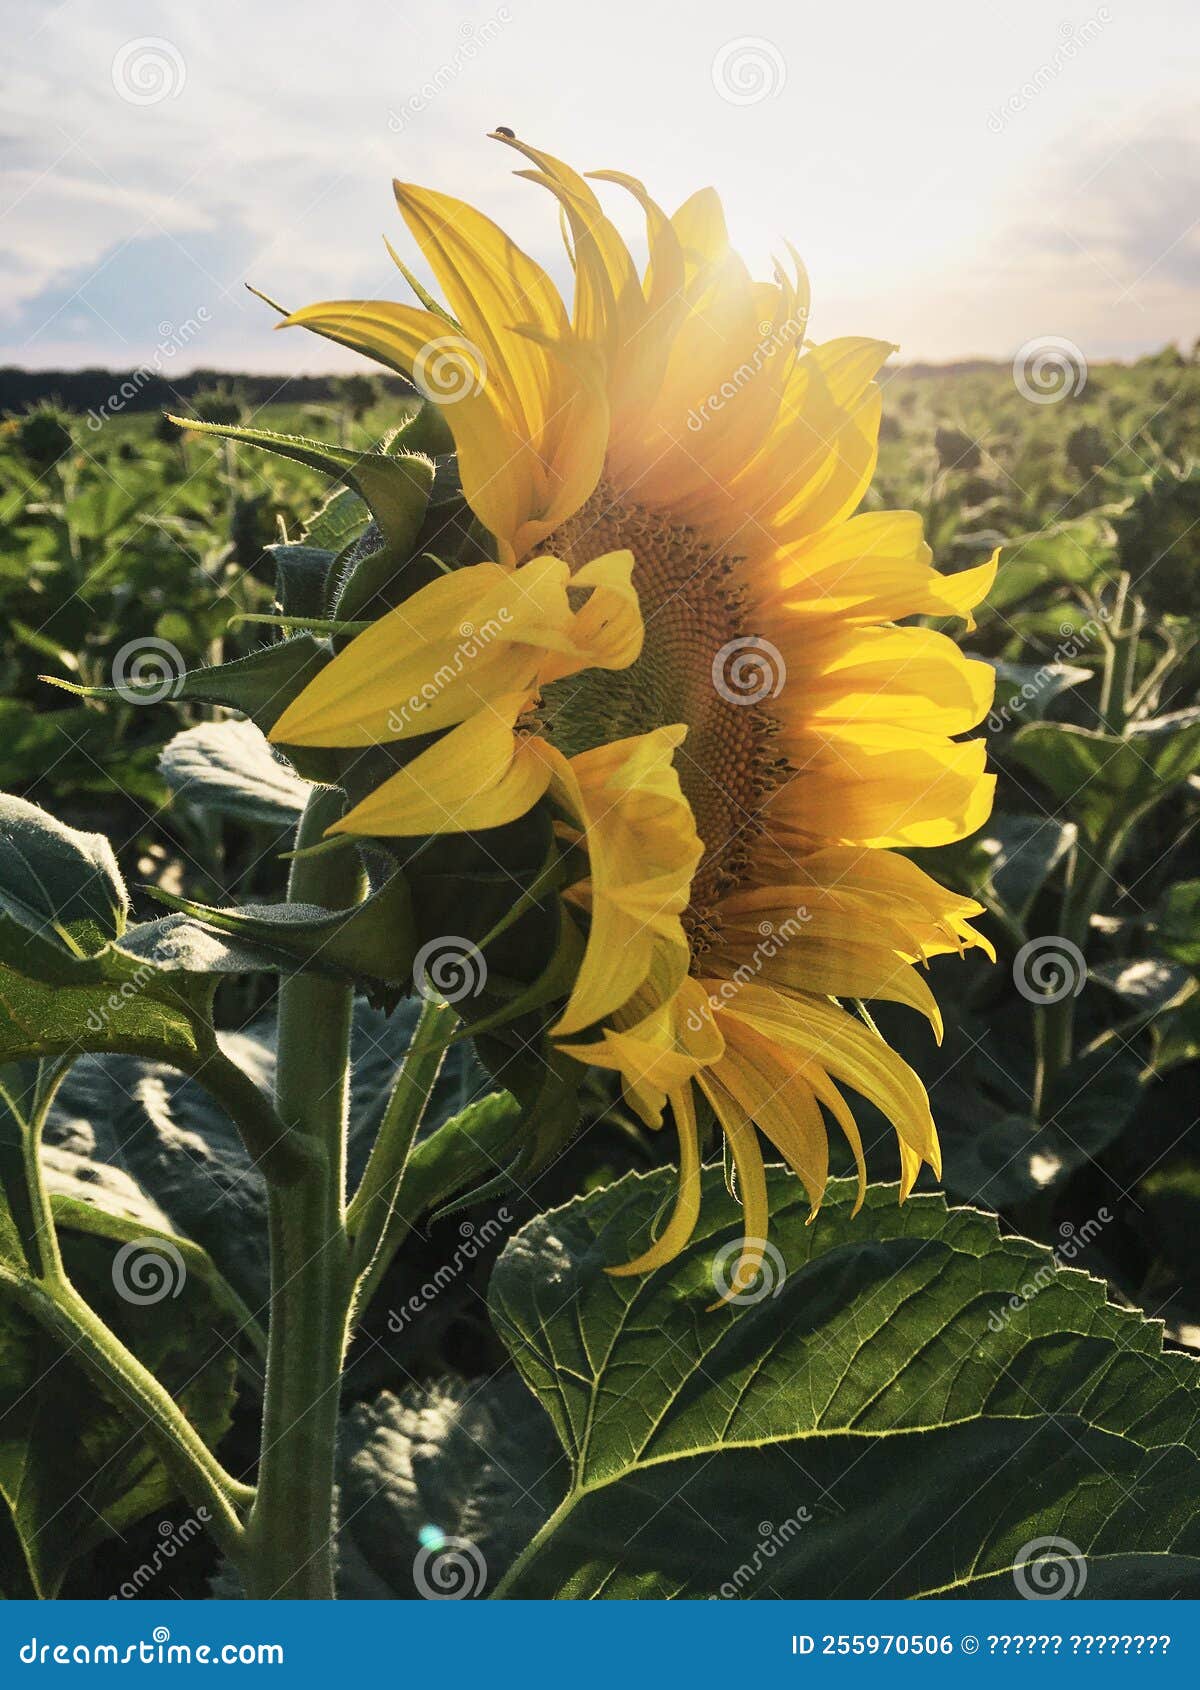 Sunflower Field in the Countryside. Ukrainian Fertile Soil that ...